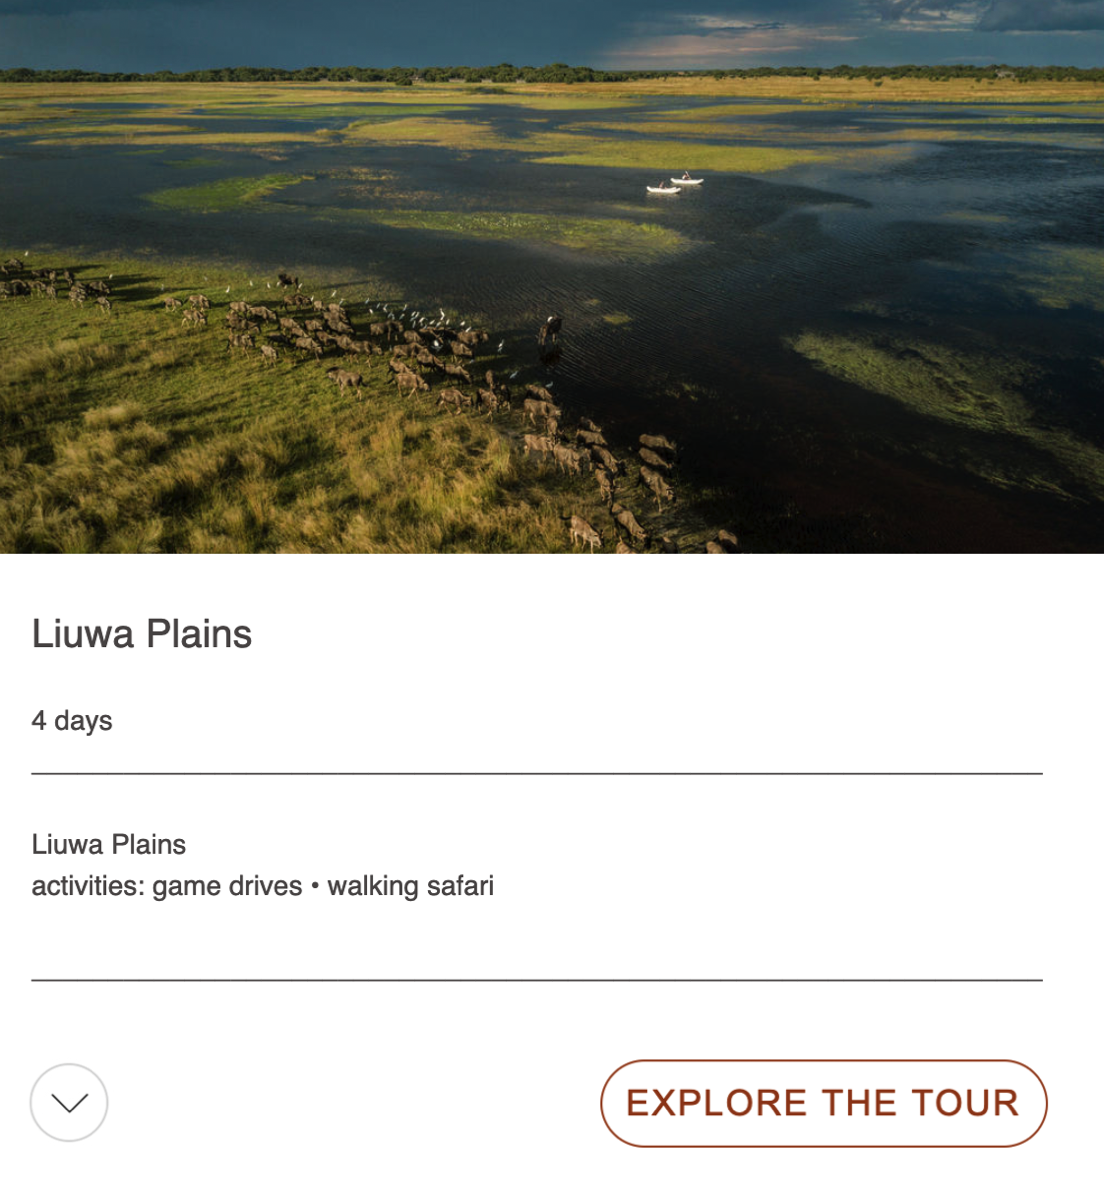 liuwa plains tour